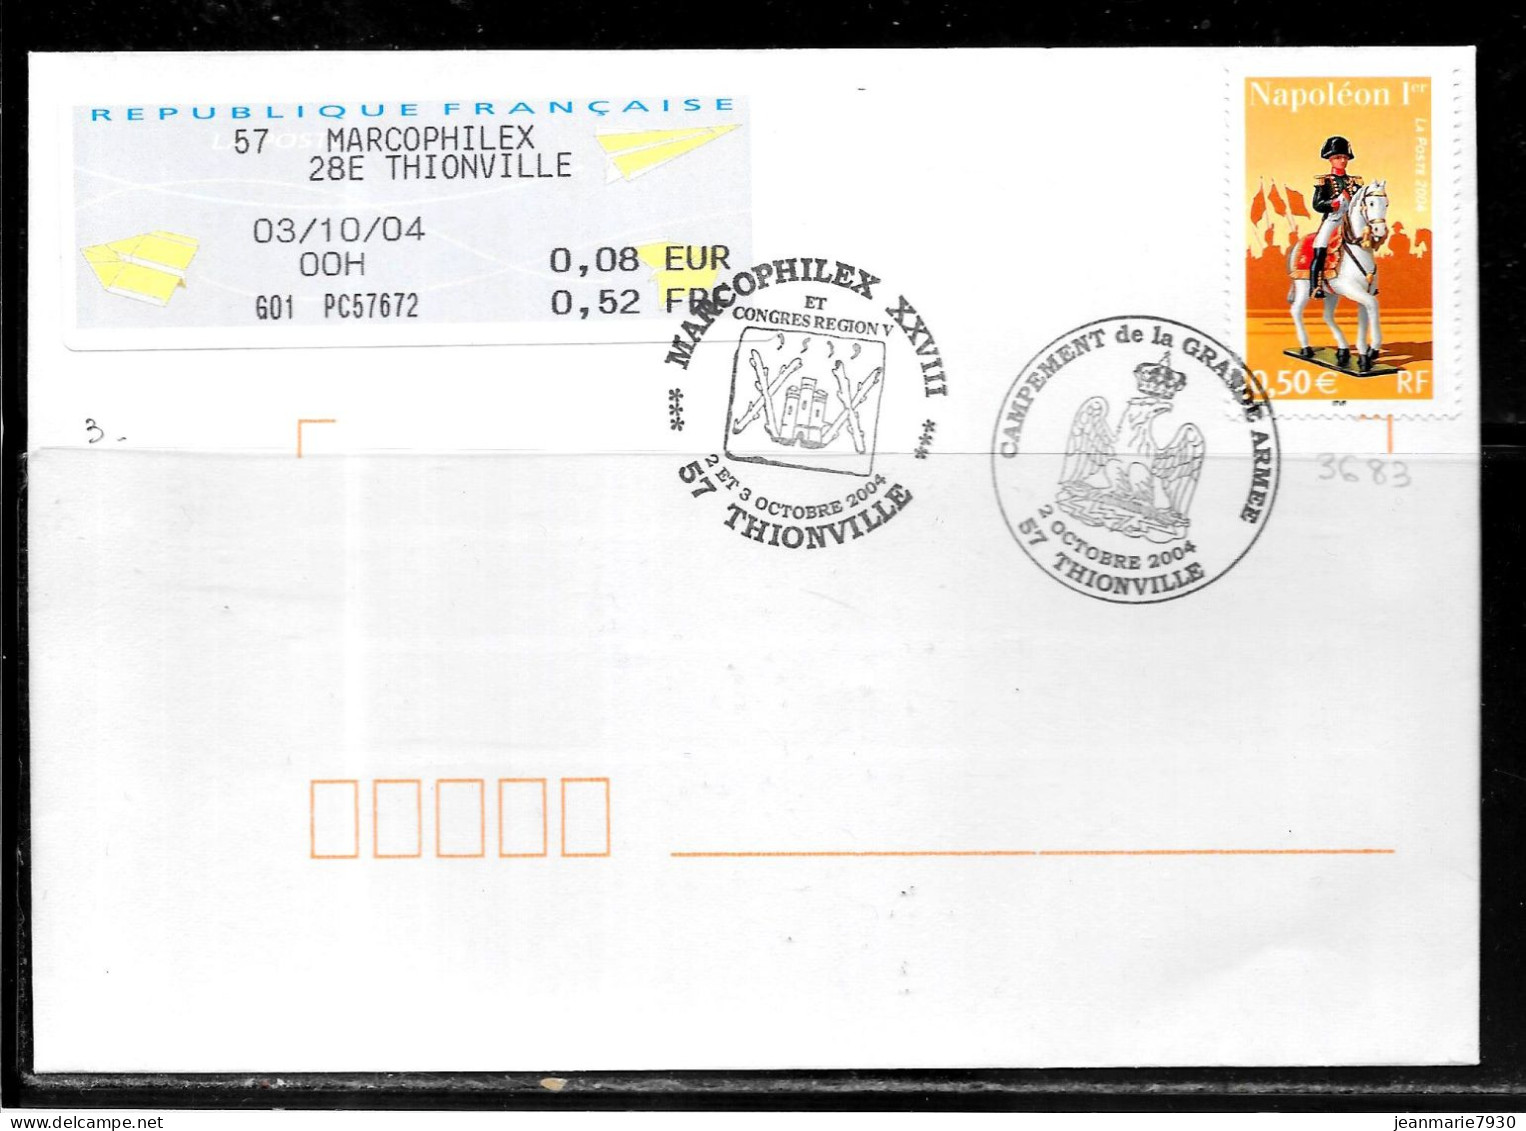 K186 - N° 3683 SUR LETTRE DE THIONVILLE DU 03/10/04 - VIGNETTE D'AFFRANCHISSEMENT - MARCOPHILEX - Commemorative Postmarks